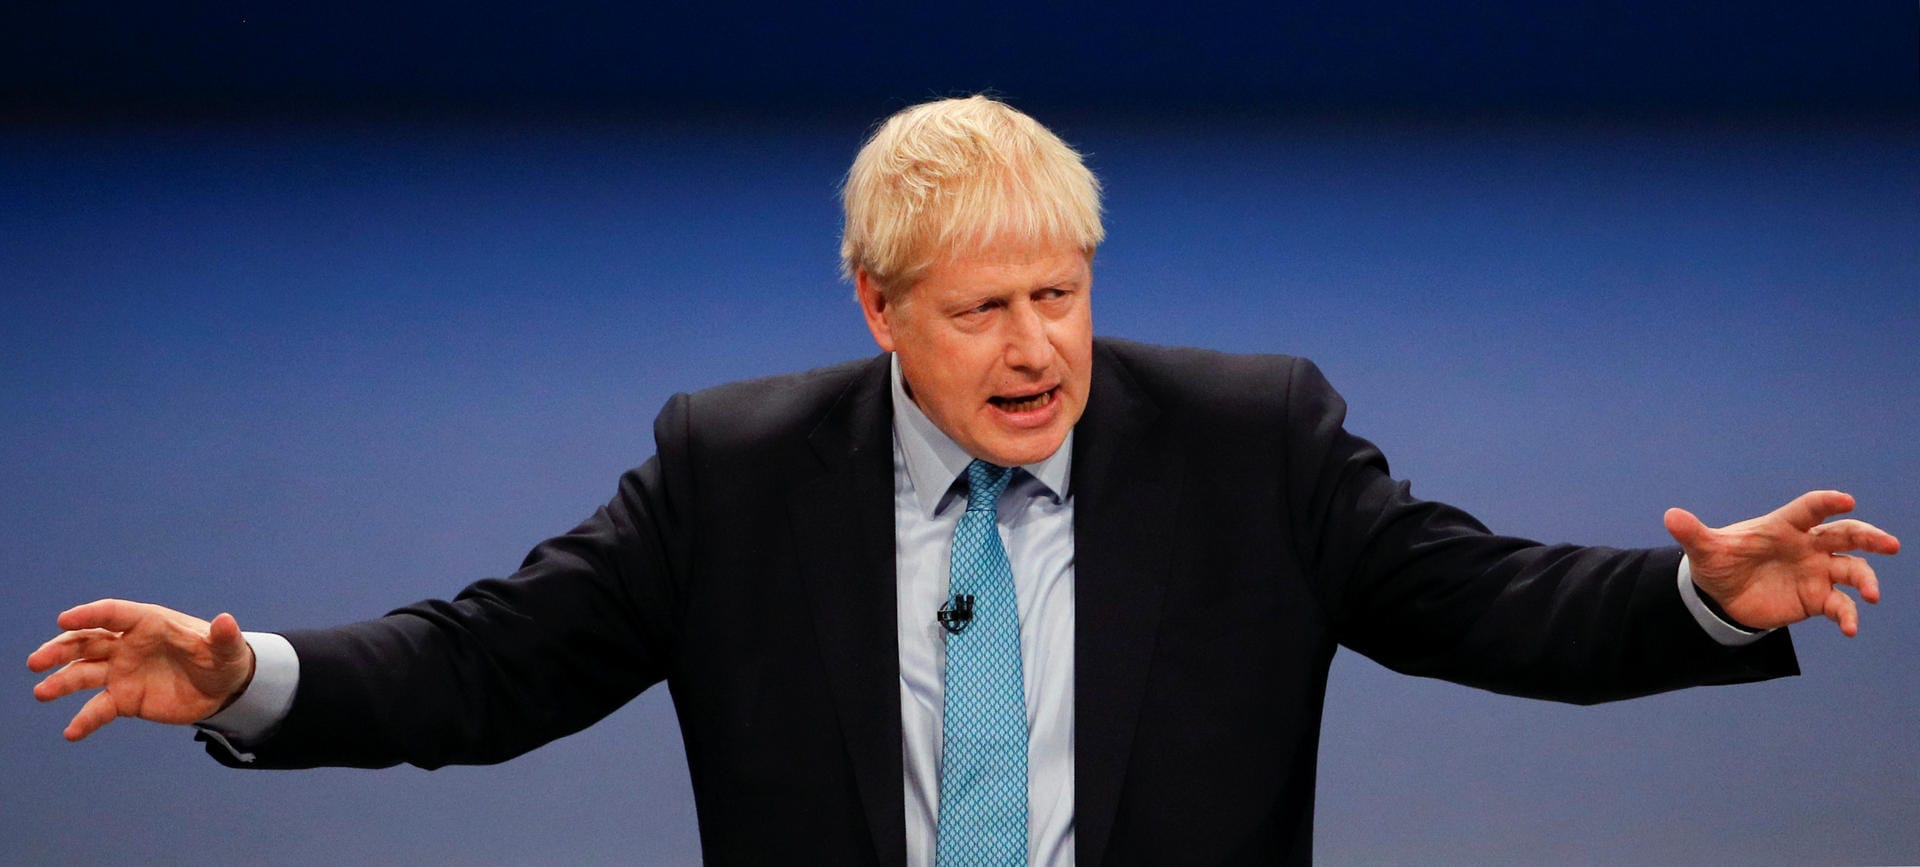 Der britische Premierminister Boris Johnson macht neue Vorschläge für eine Lösung im Brexit-Streit – und widerspricht sich mehrfach selbst. Politiker in Deutschland und Europa reagieren nun.